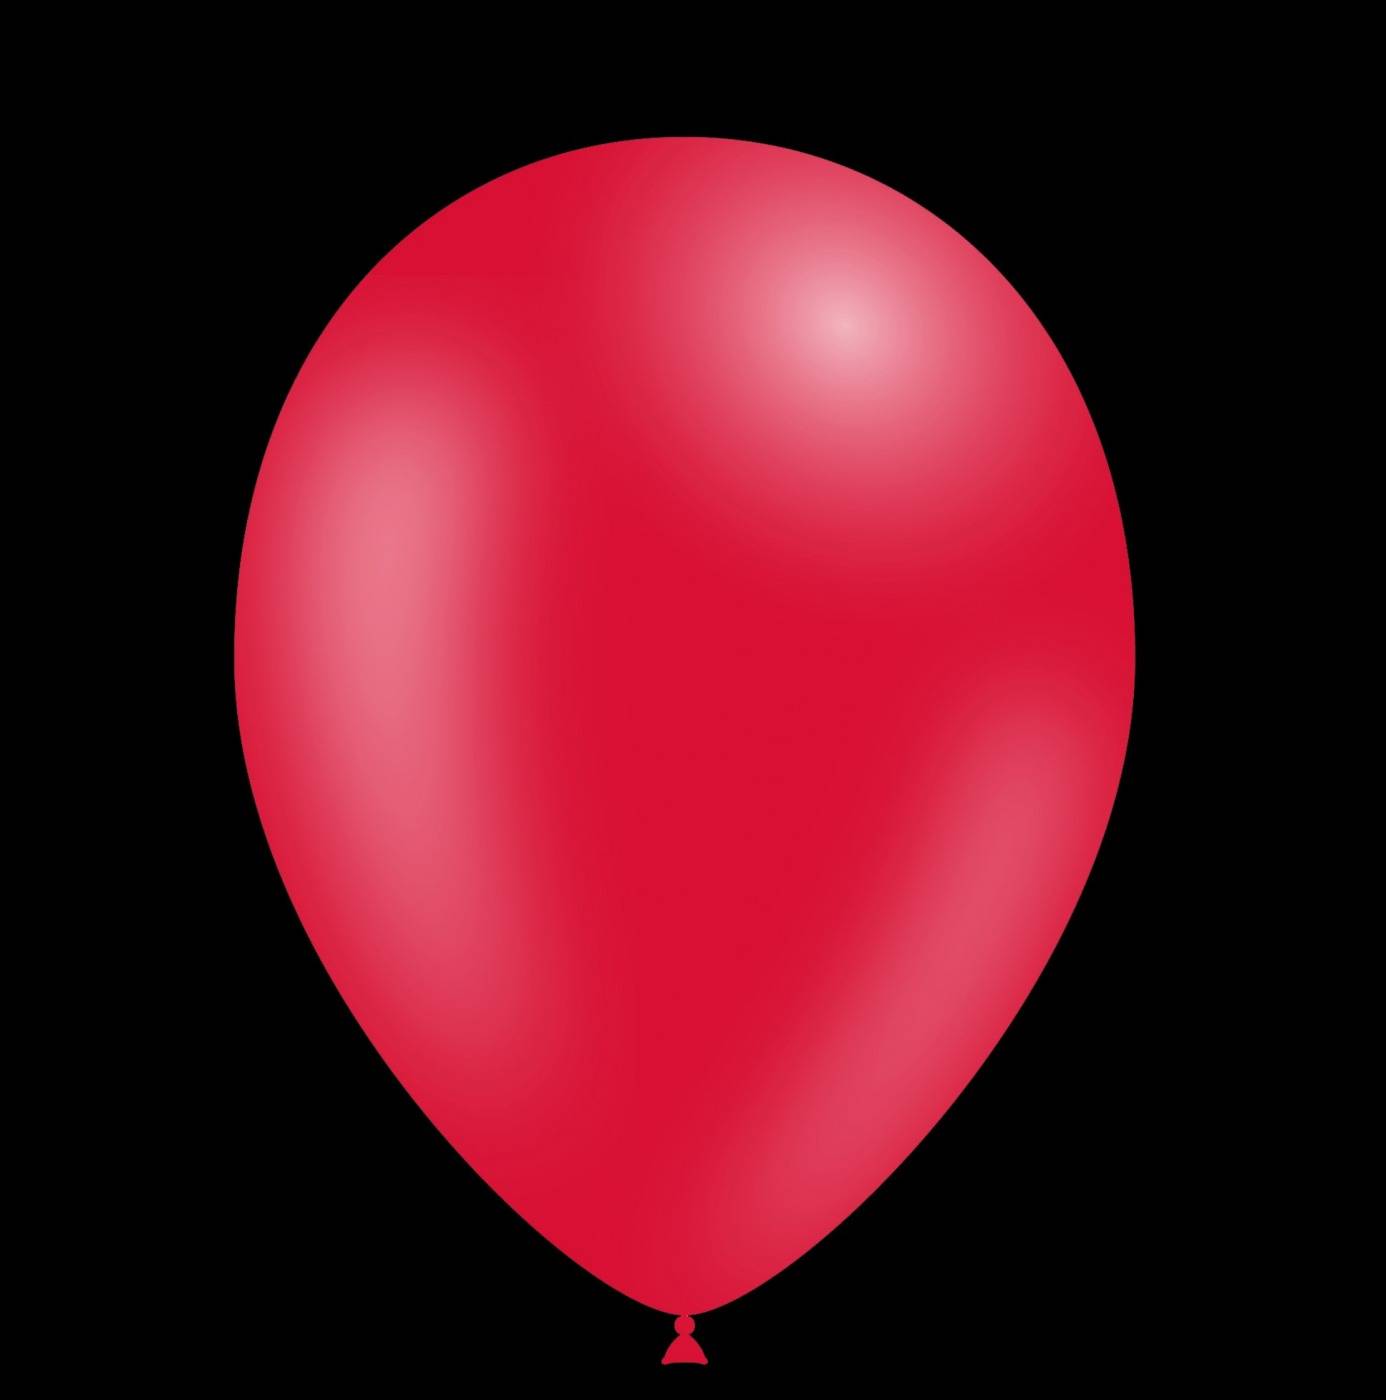 Rode ballonnen kopen voor uw feest